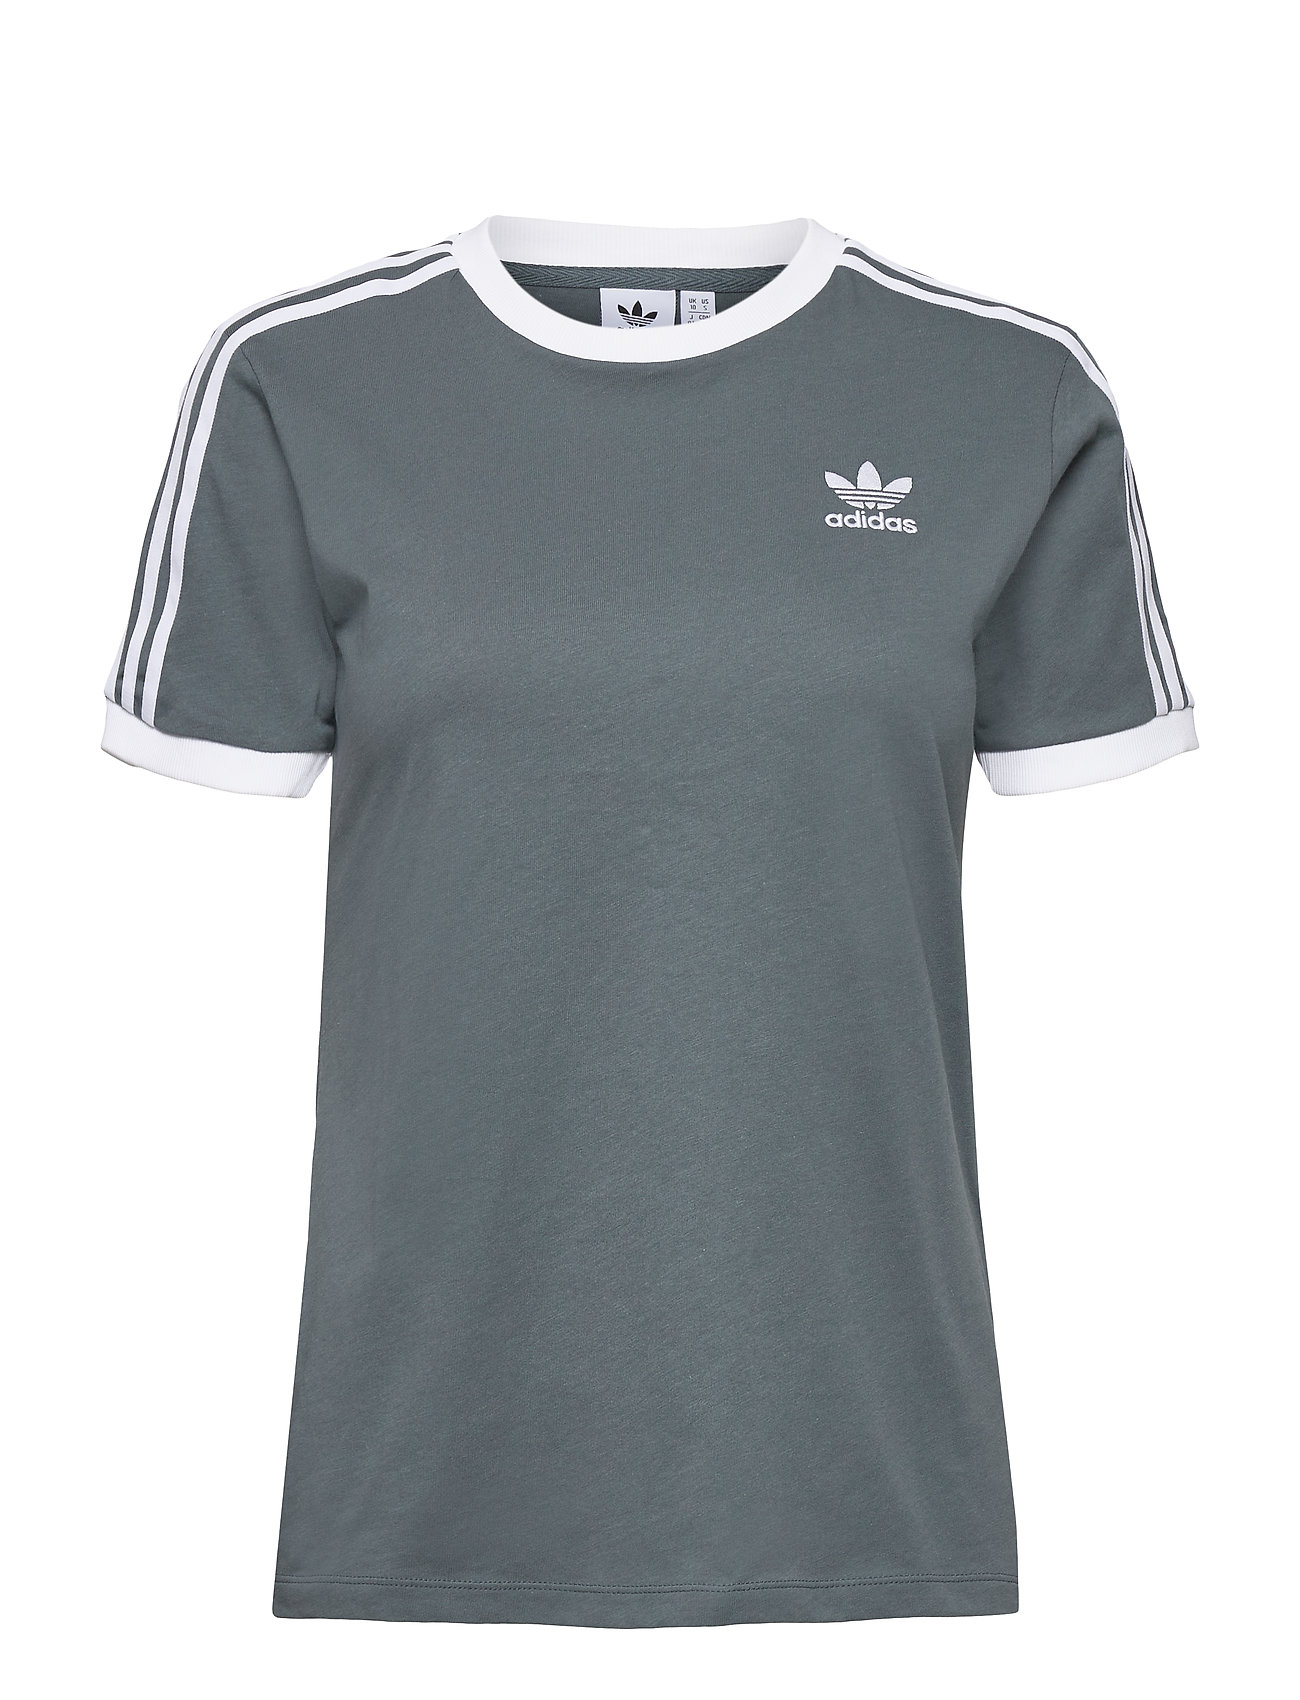 Adicolor Classics 3-Stripes T-Shirt W T-shirts & Tops Short-sleeved Harmaa Adidas Originals, adidas Originals